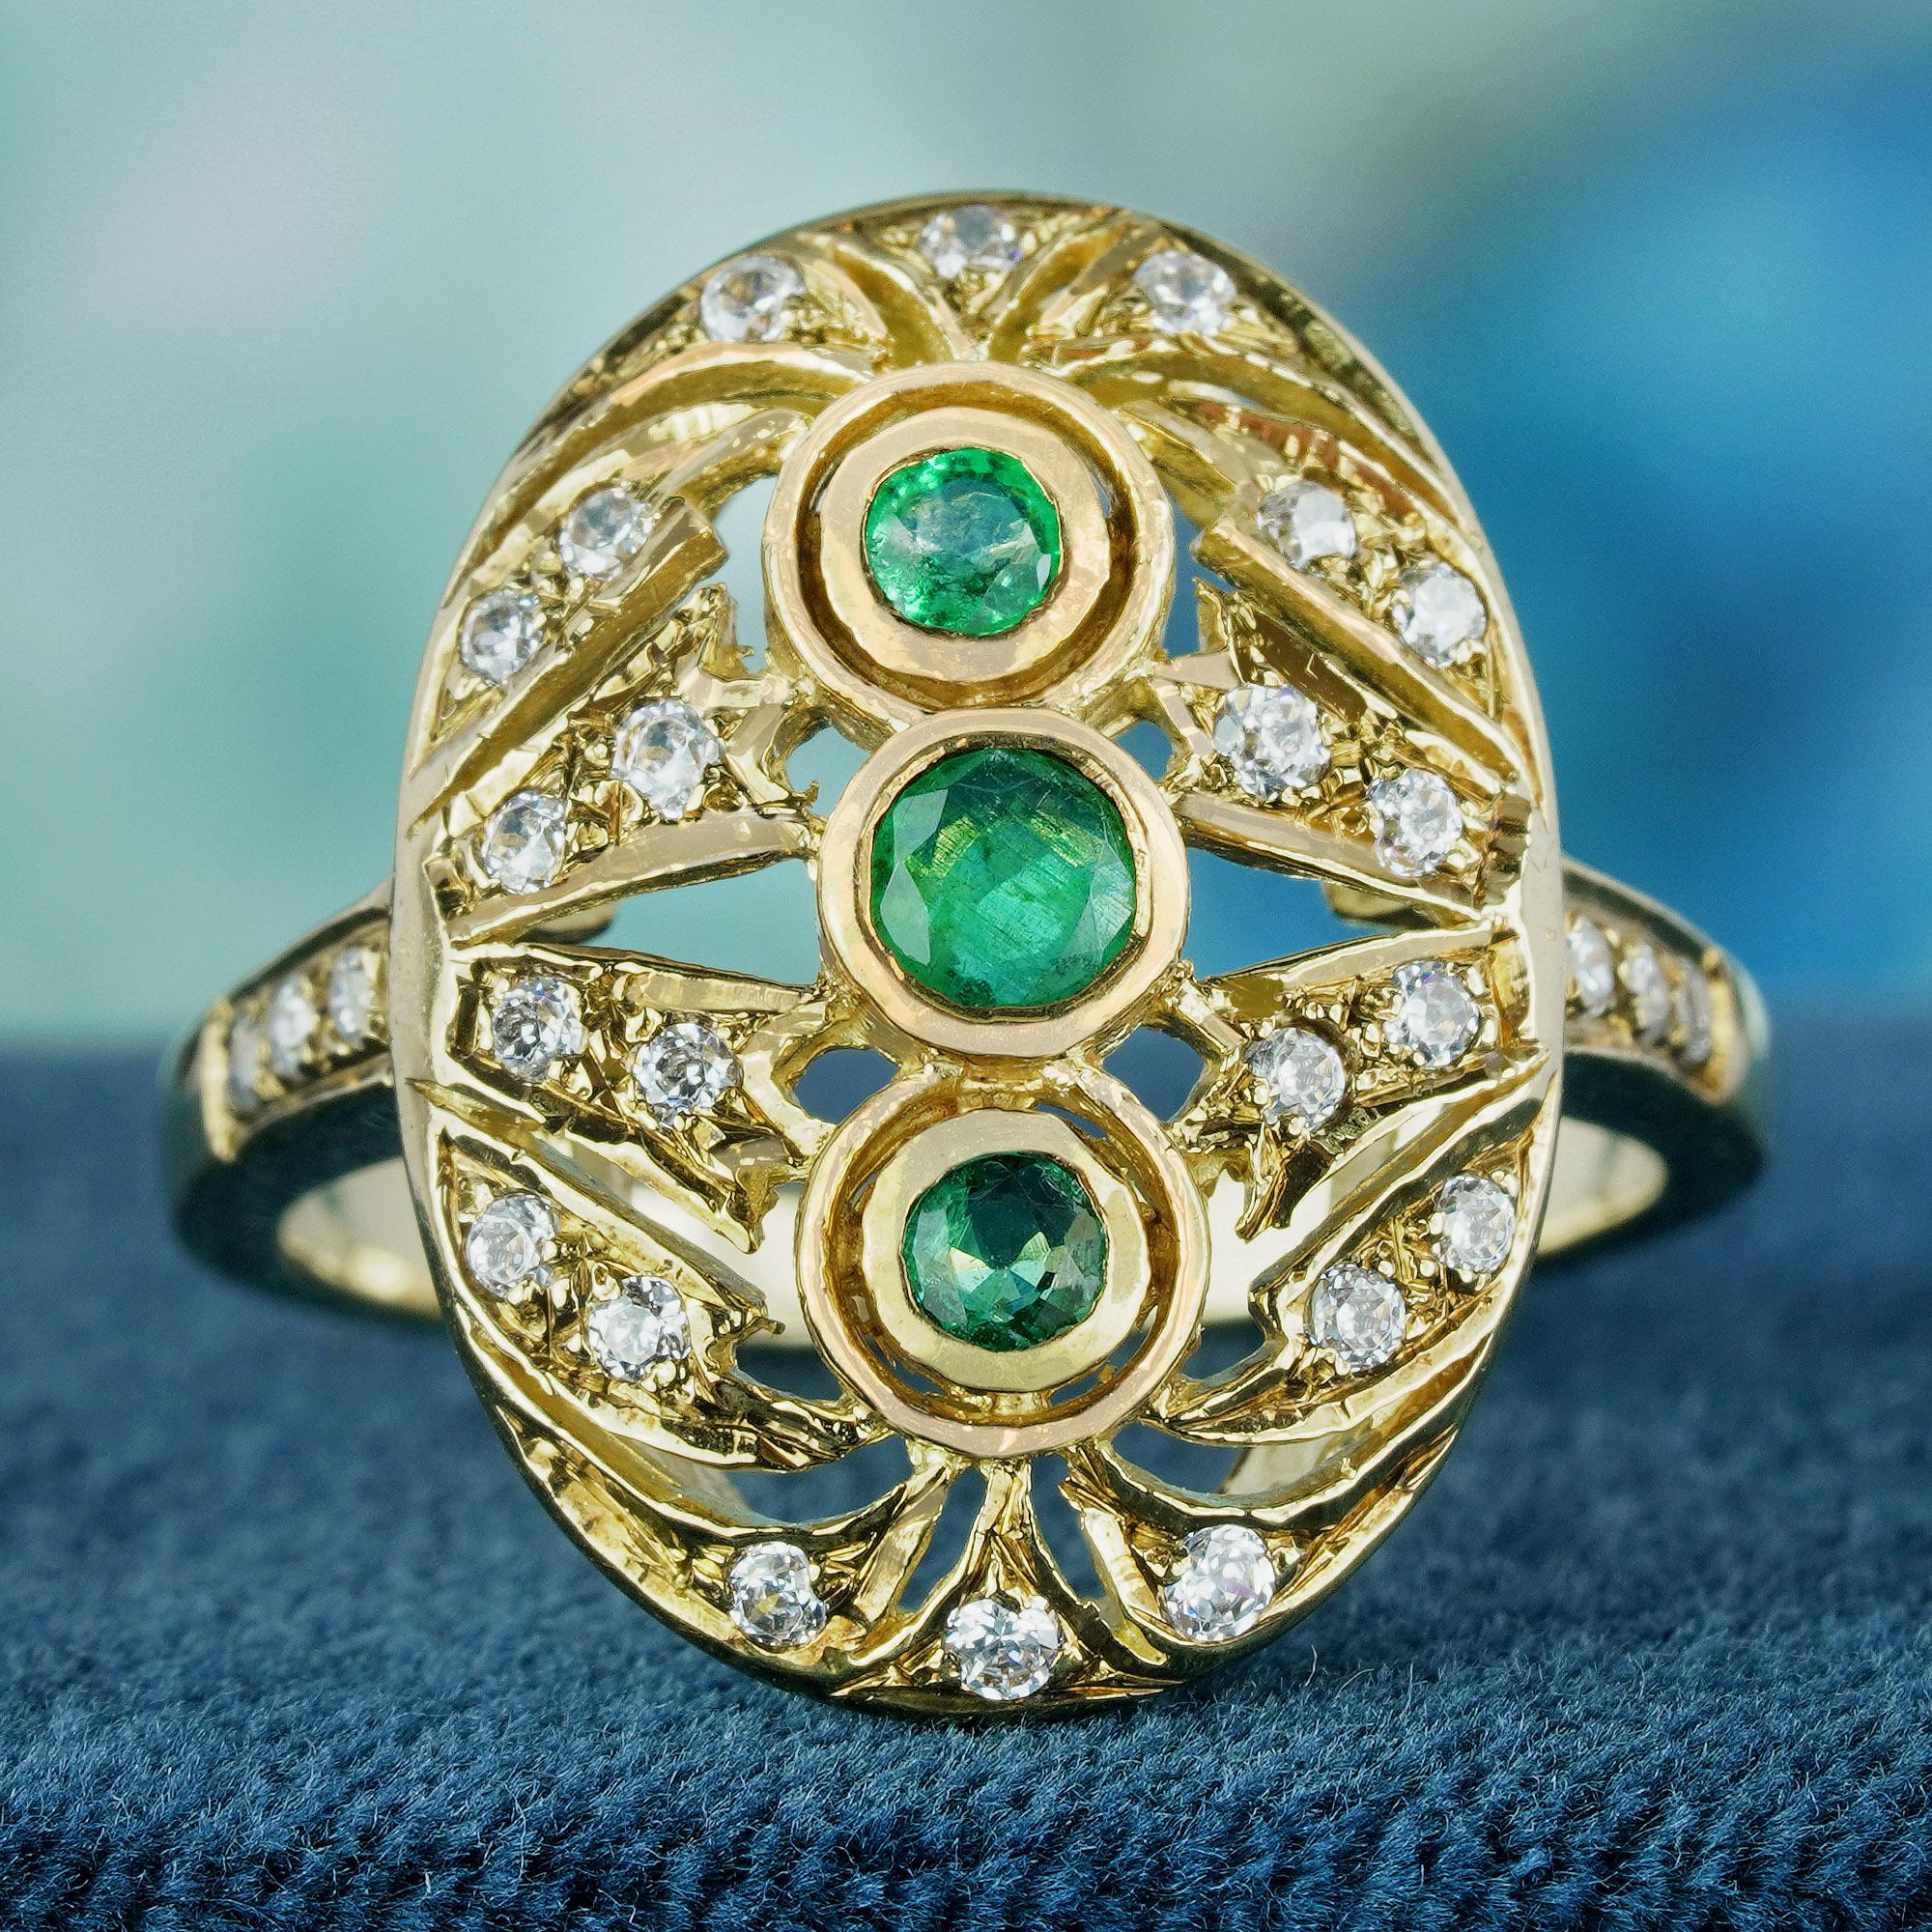 Das Herzstück dieses Rings sind drei faszinierende Smaragde im Rundschliff. Dieser ovale, filigrane Ring aus strahlendem Gelbgold im Vintage-Stil strahlt zeitlose Eleganz aus. Die Schultern des Bandes sind mit Diamanten verziert und verleihen ihm